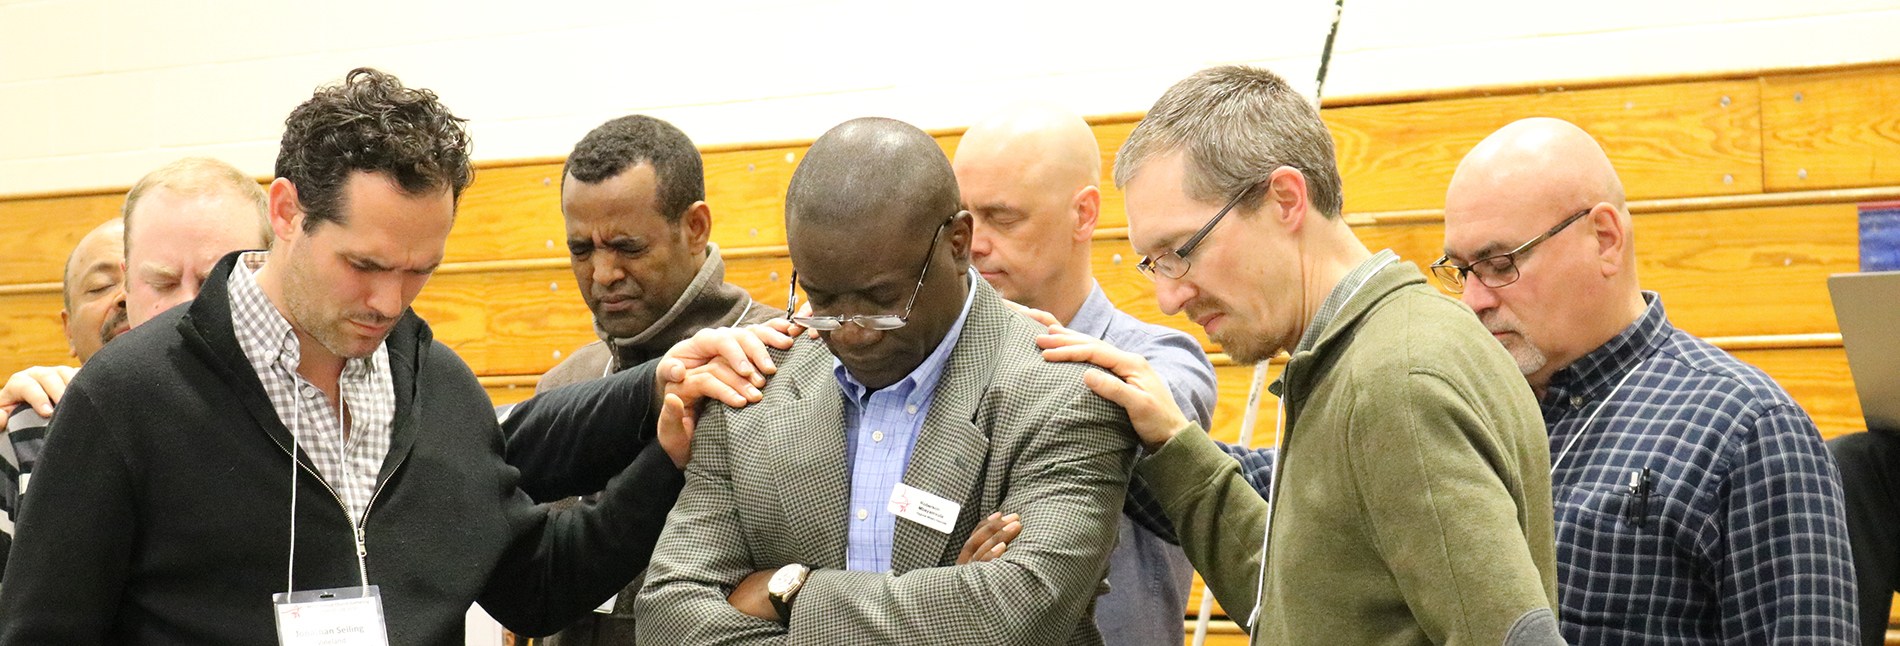 pastors praying multicultural